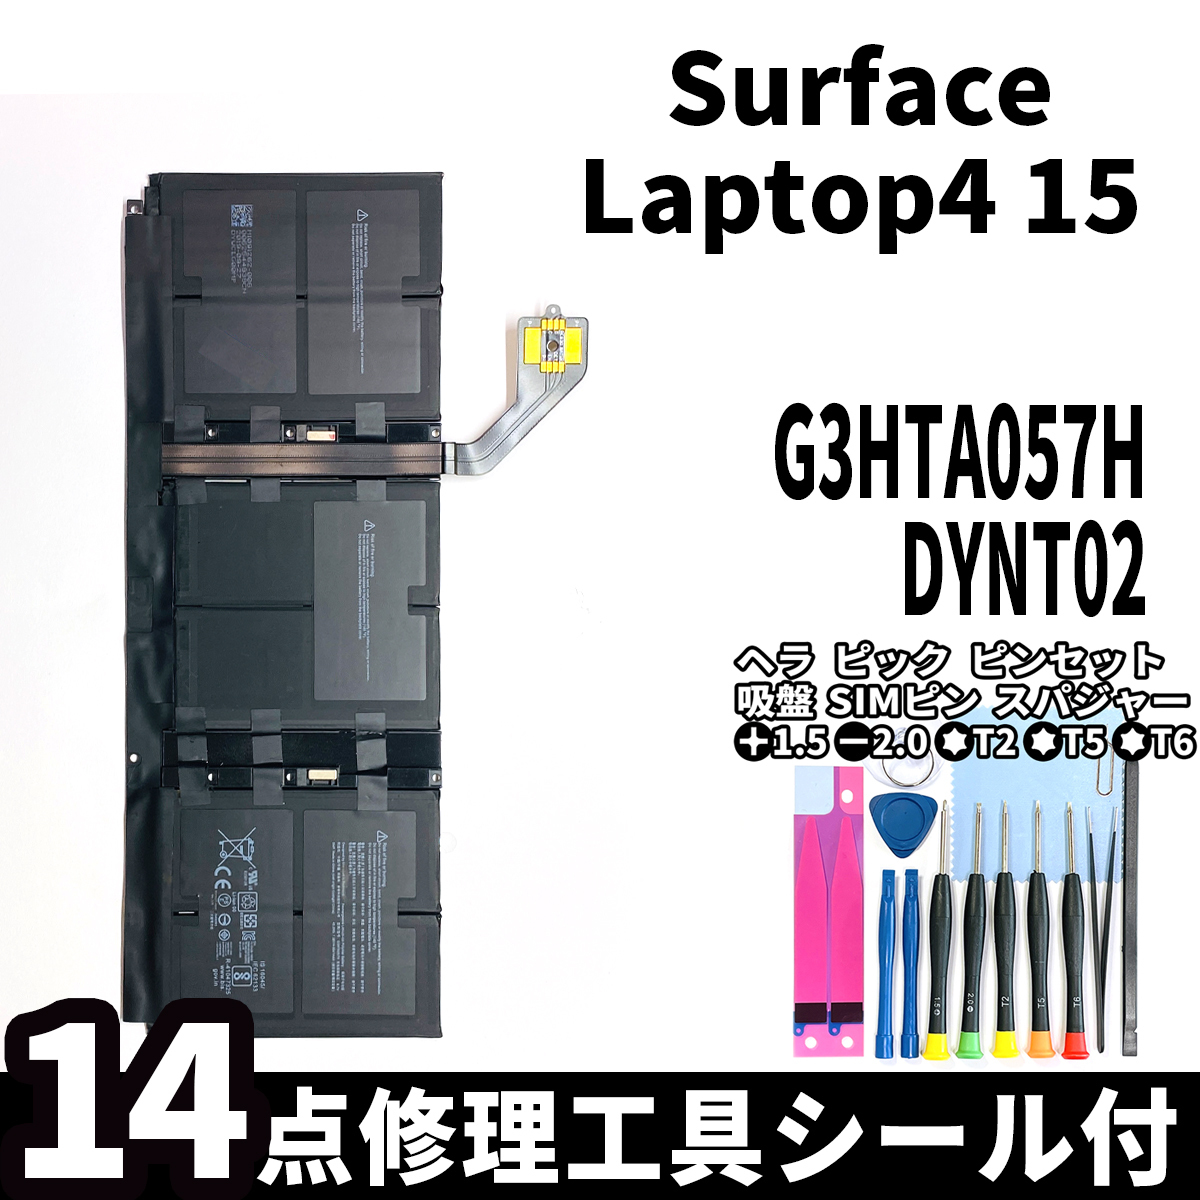 国内即日発送!純正新品!Surface Laptop4 15 バッテリー G3HTA057H DYNT02 電池パック交換 本体用内蔵battery 両面テープ 修理工具付_画像1